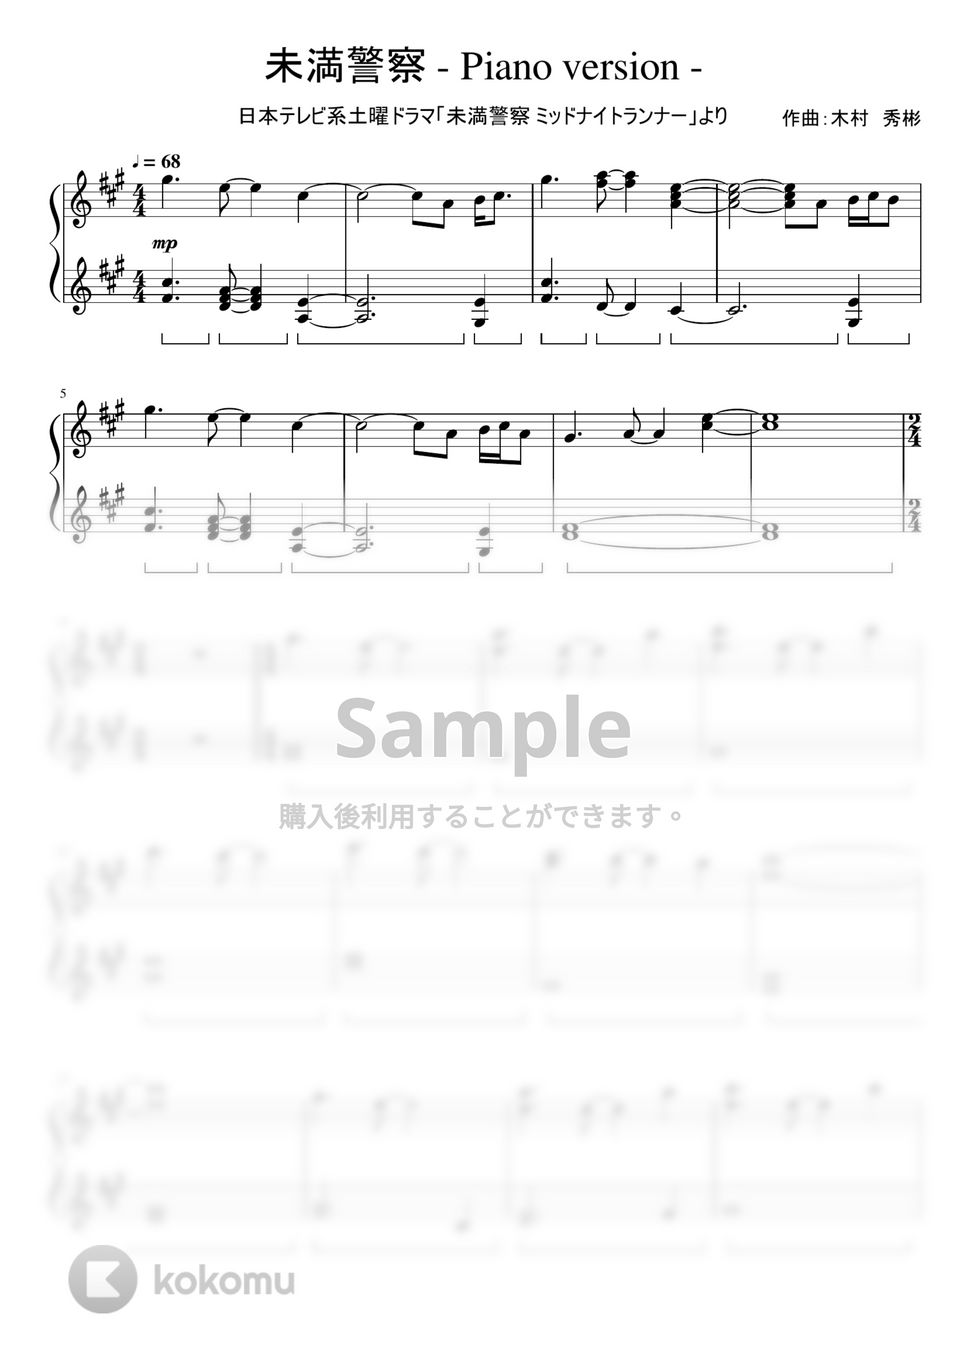 ドラマ「未満警察 ミッドナイトランナー」 - 未満警察 - Piano version - by ちゃんRINA。